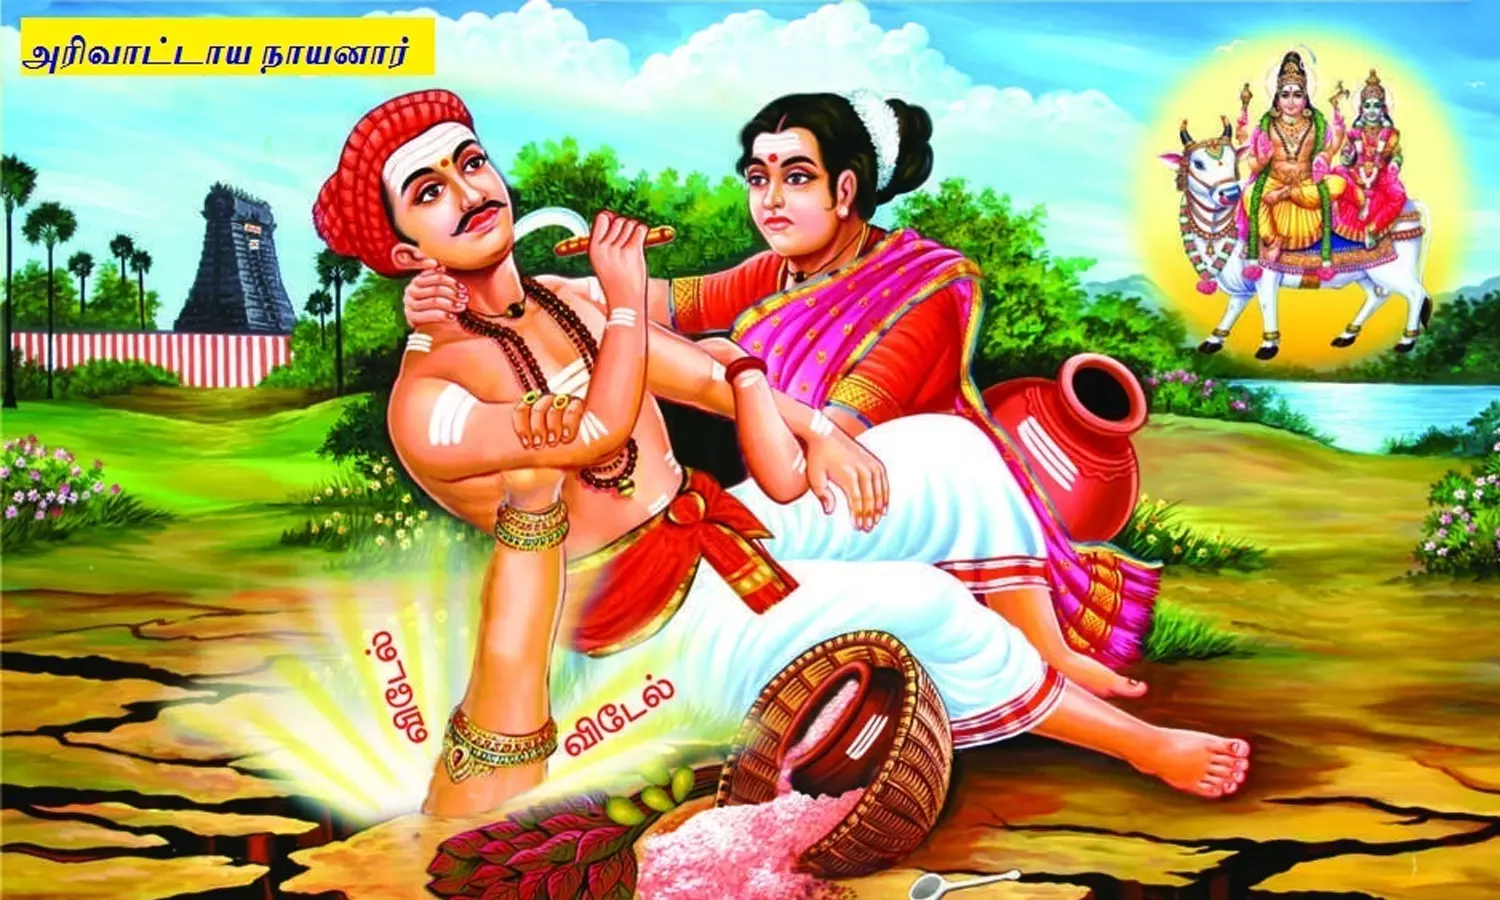 அரிவாட்டாய நாயனார் குருபூஜை | Arivatthaya Nayanar Gurupuja